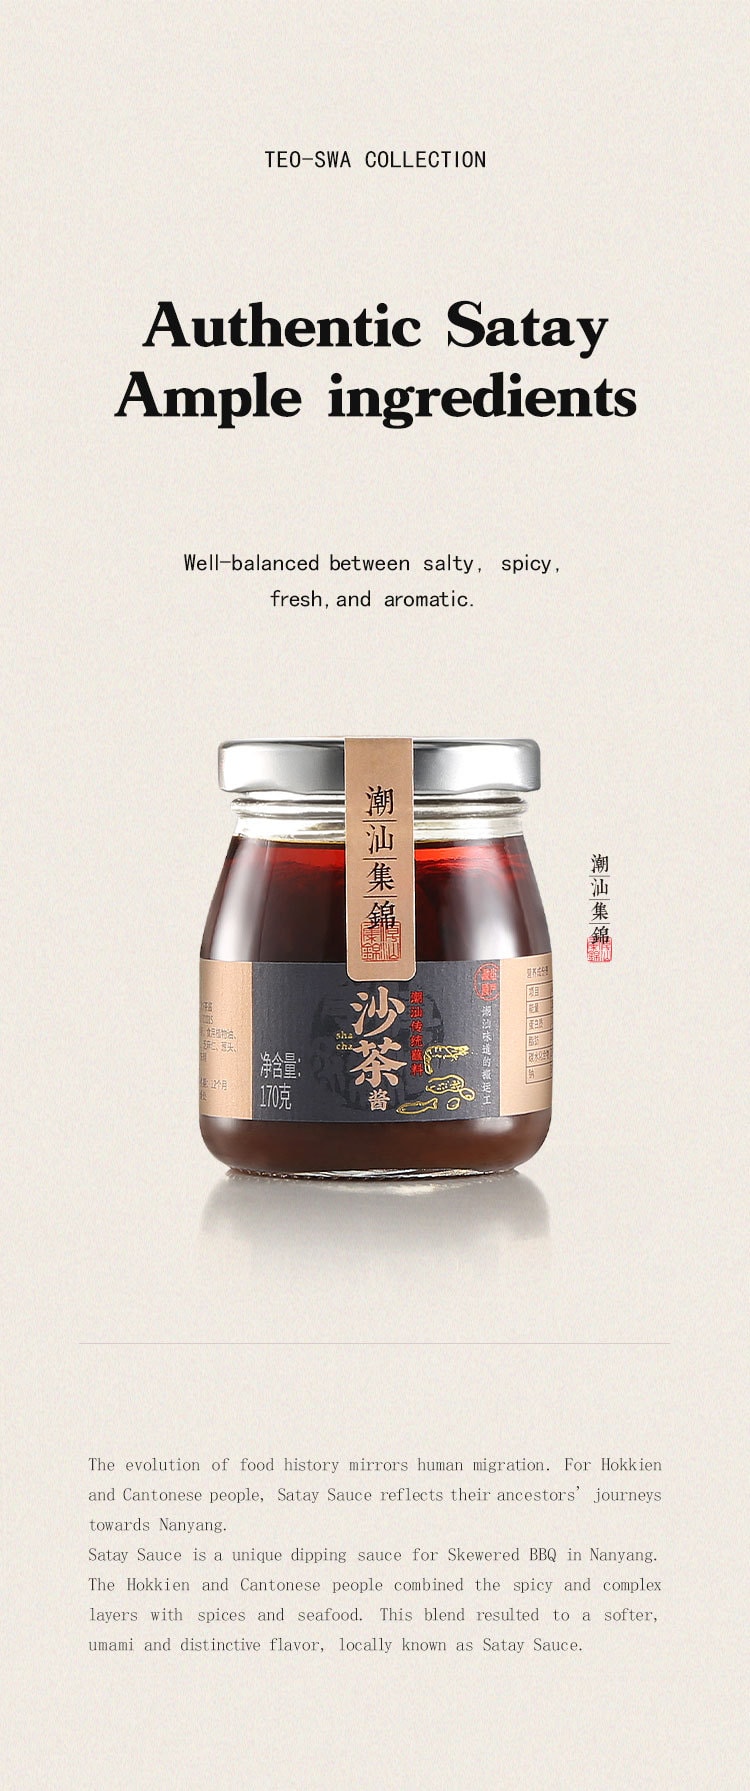 中国潮汕集锦 拌面套装 沙茶酱 红香辣酱 蒜头油 葱油 640克